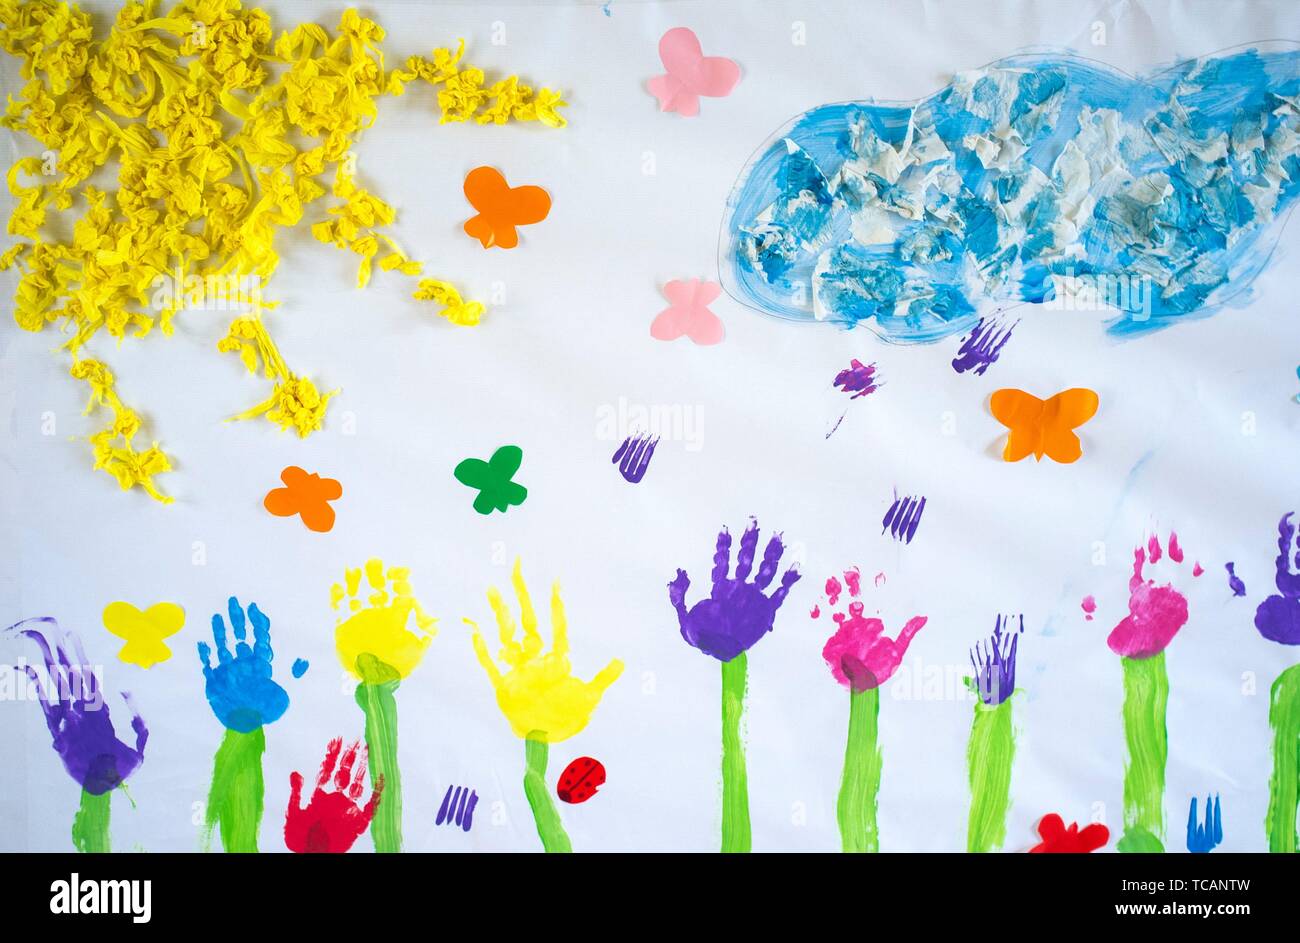 Fresque de printemps créer sur du papier craft peint avec les mains s'imprime. Faites par les enfants. Banque D'Images